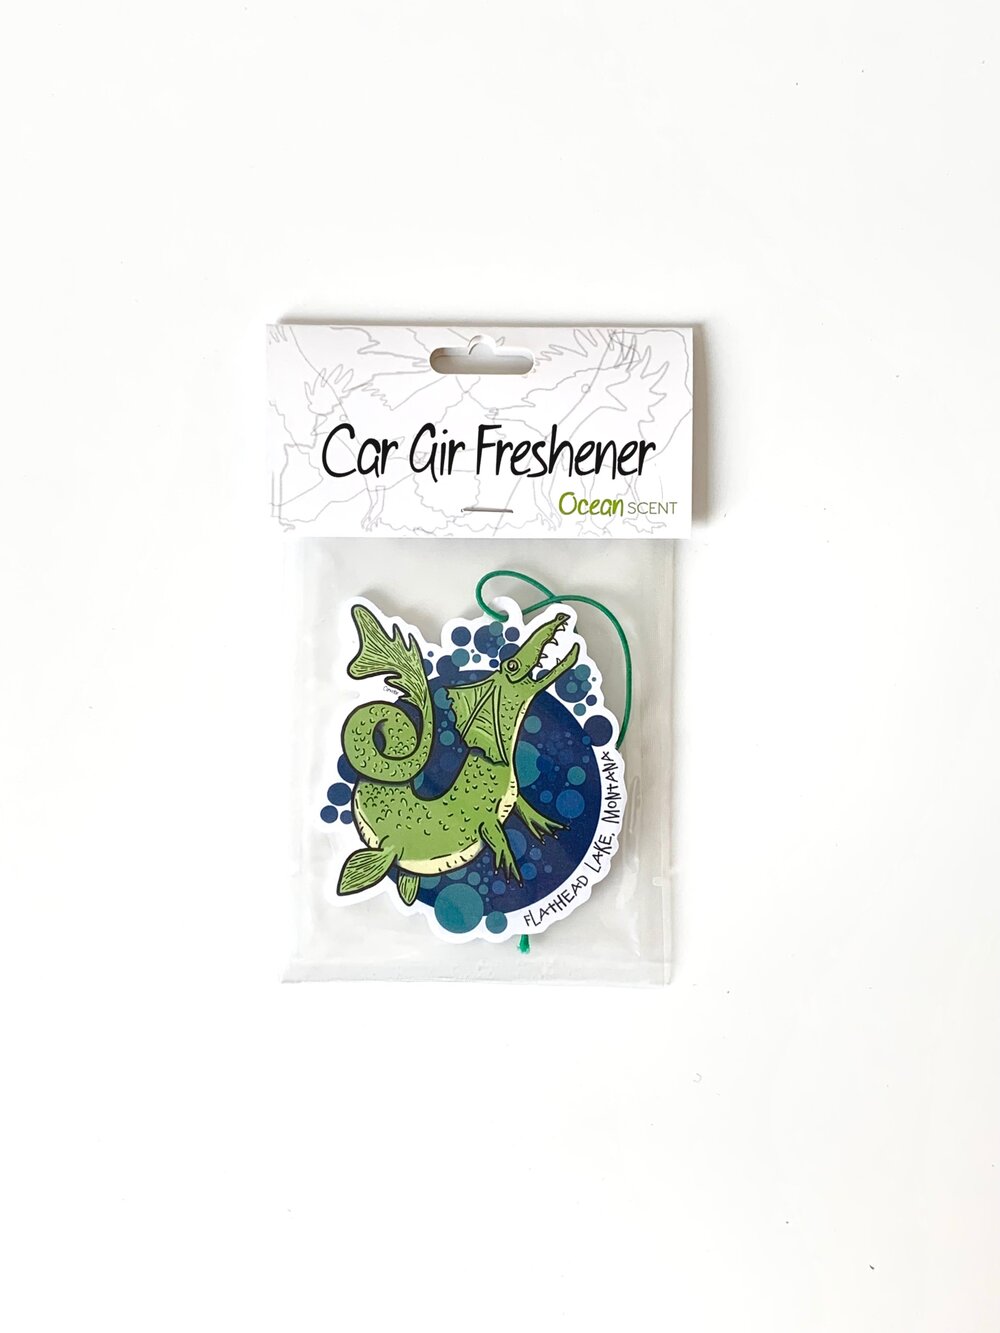 Flathead Lake Monster Car Freshener — CORVIDAE drawings & designs